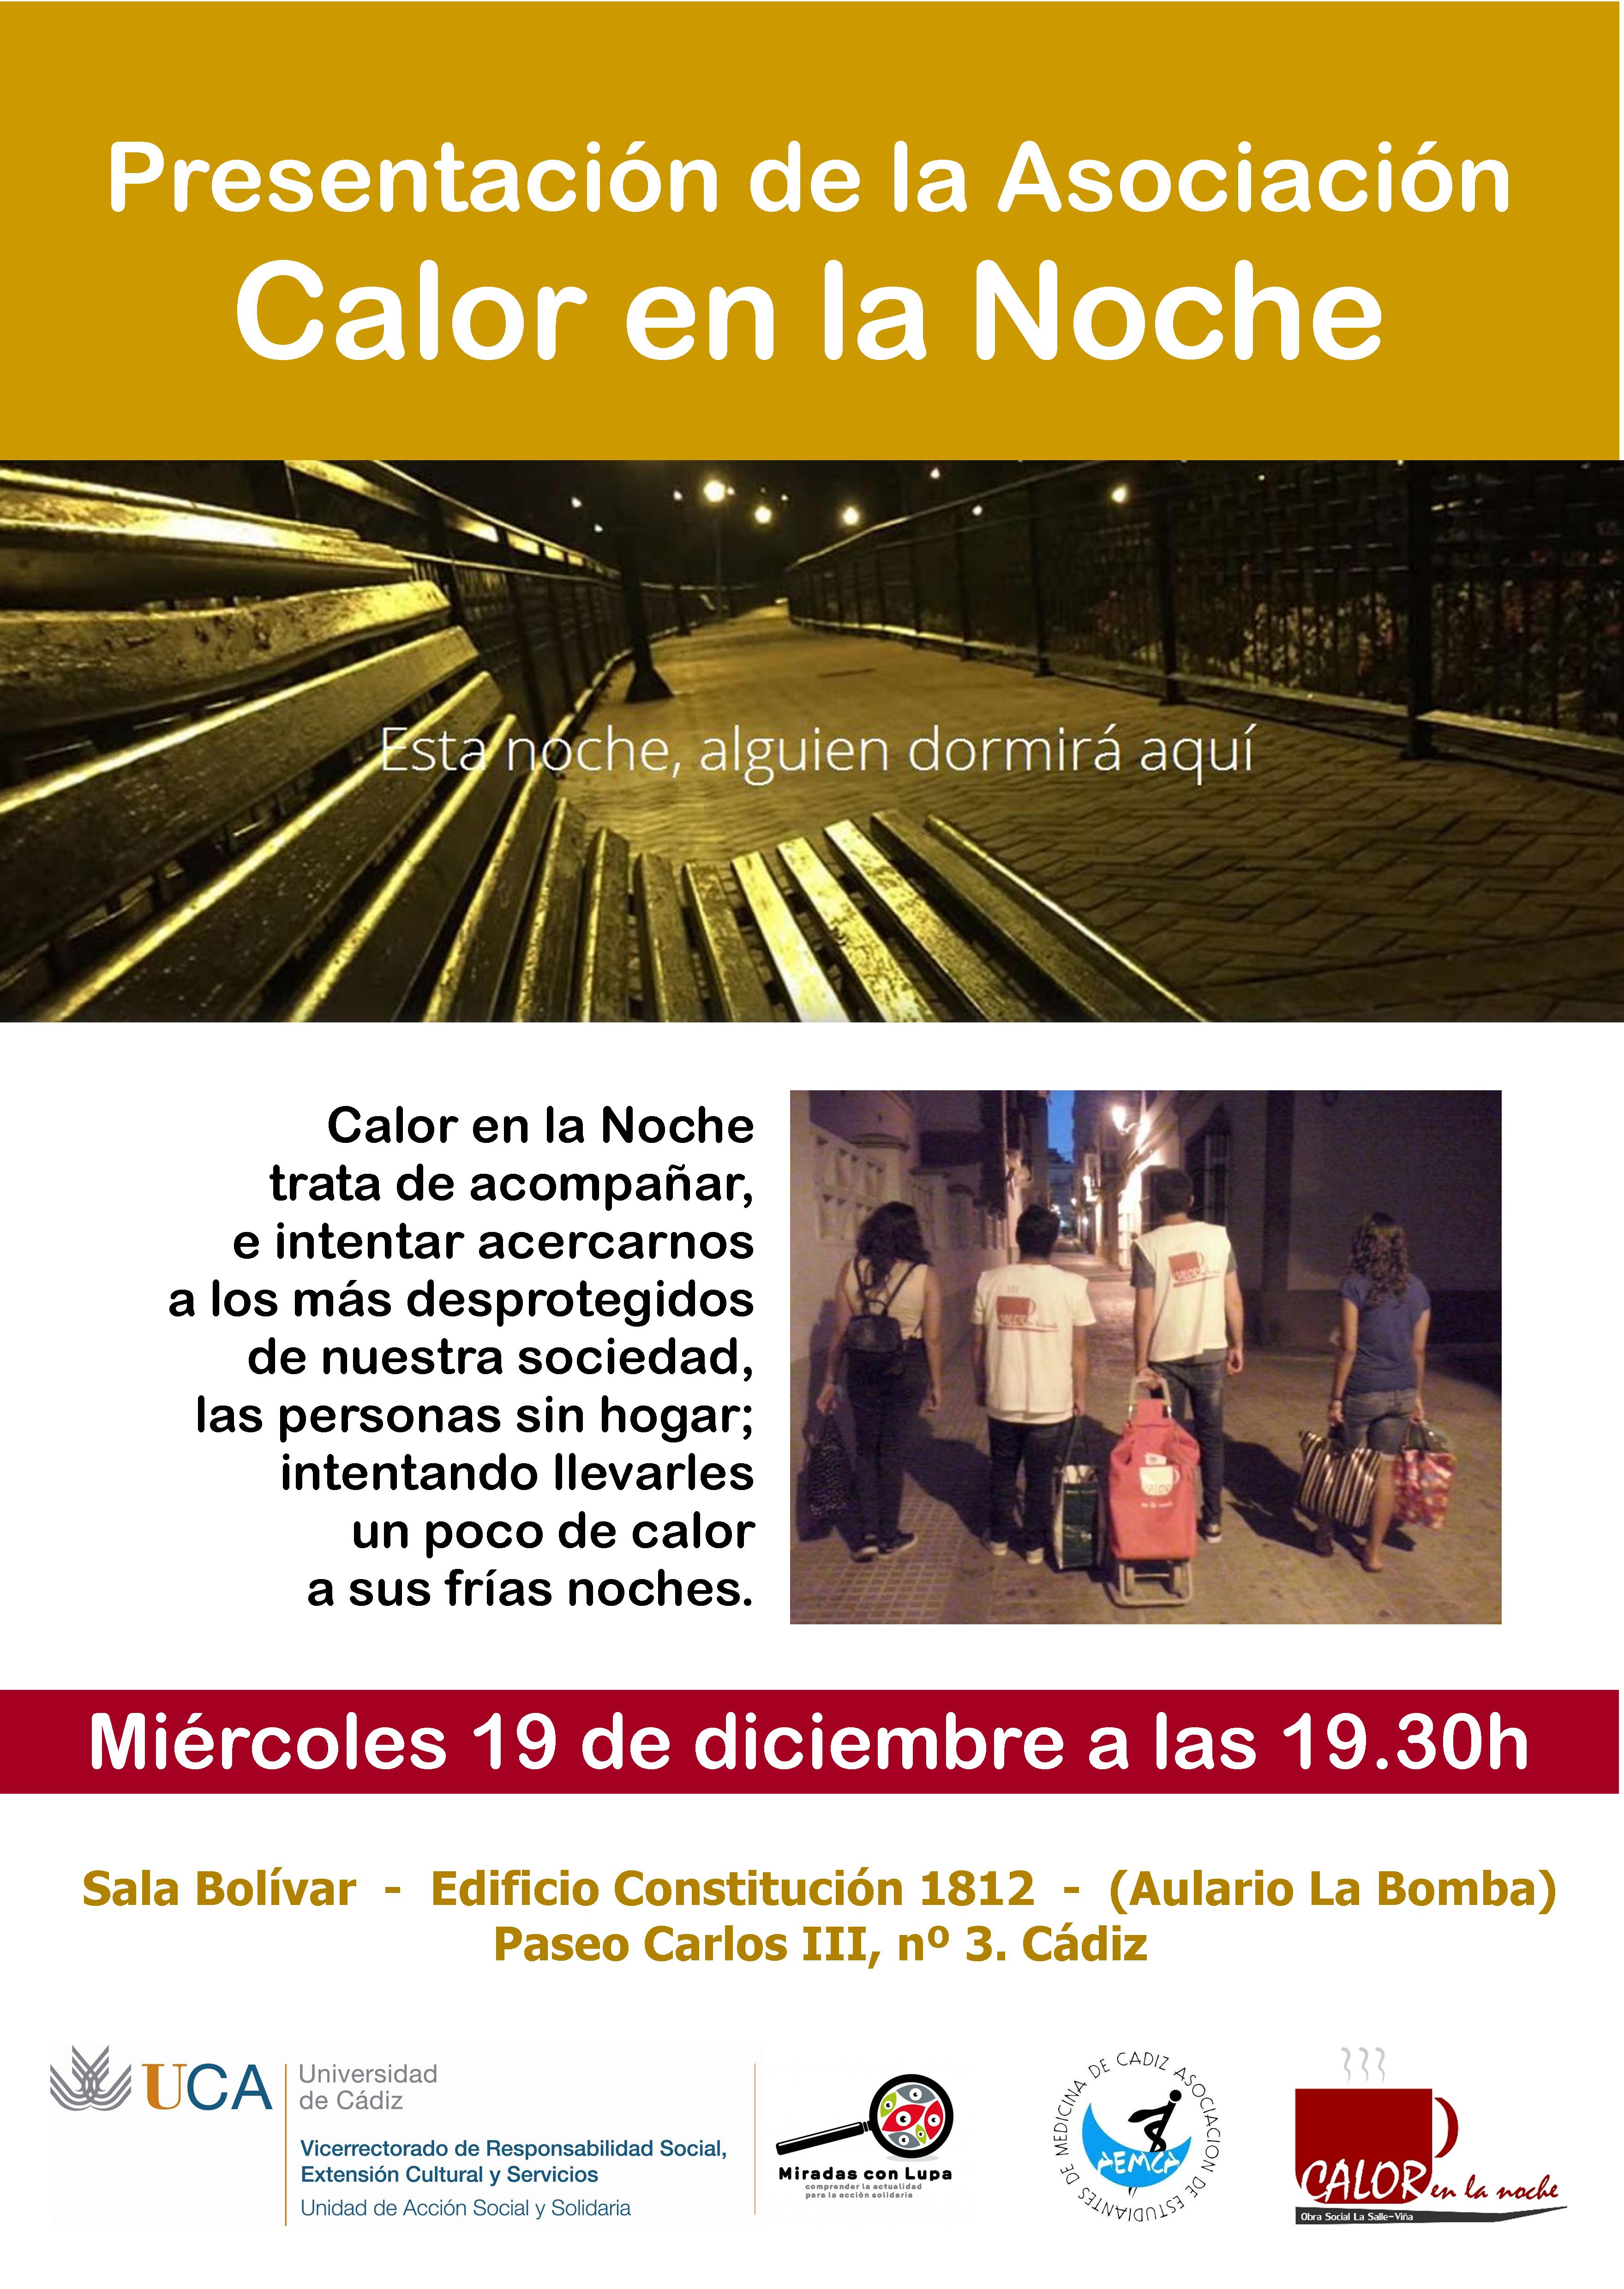 19 de diciembre. 19.30h. Presentación de la Asociación Calor en la Noche. Campus de Cádiz